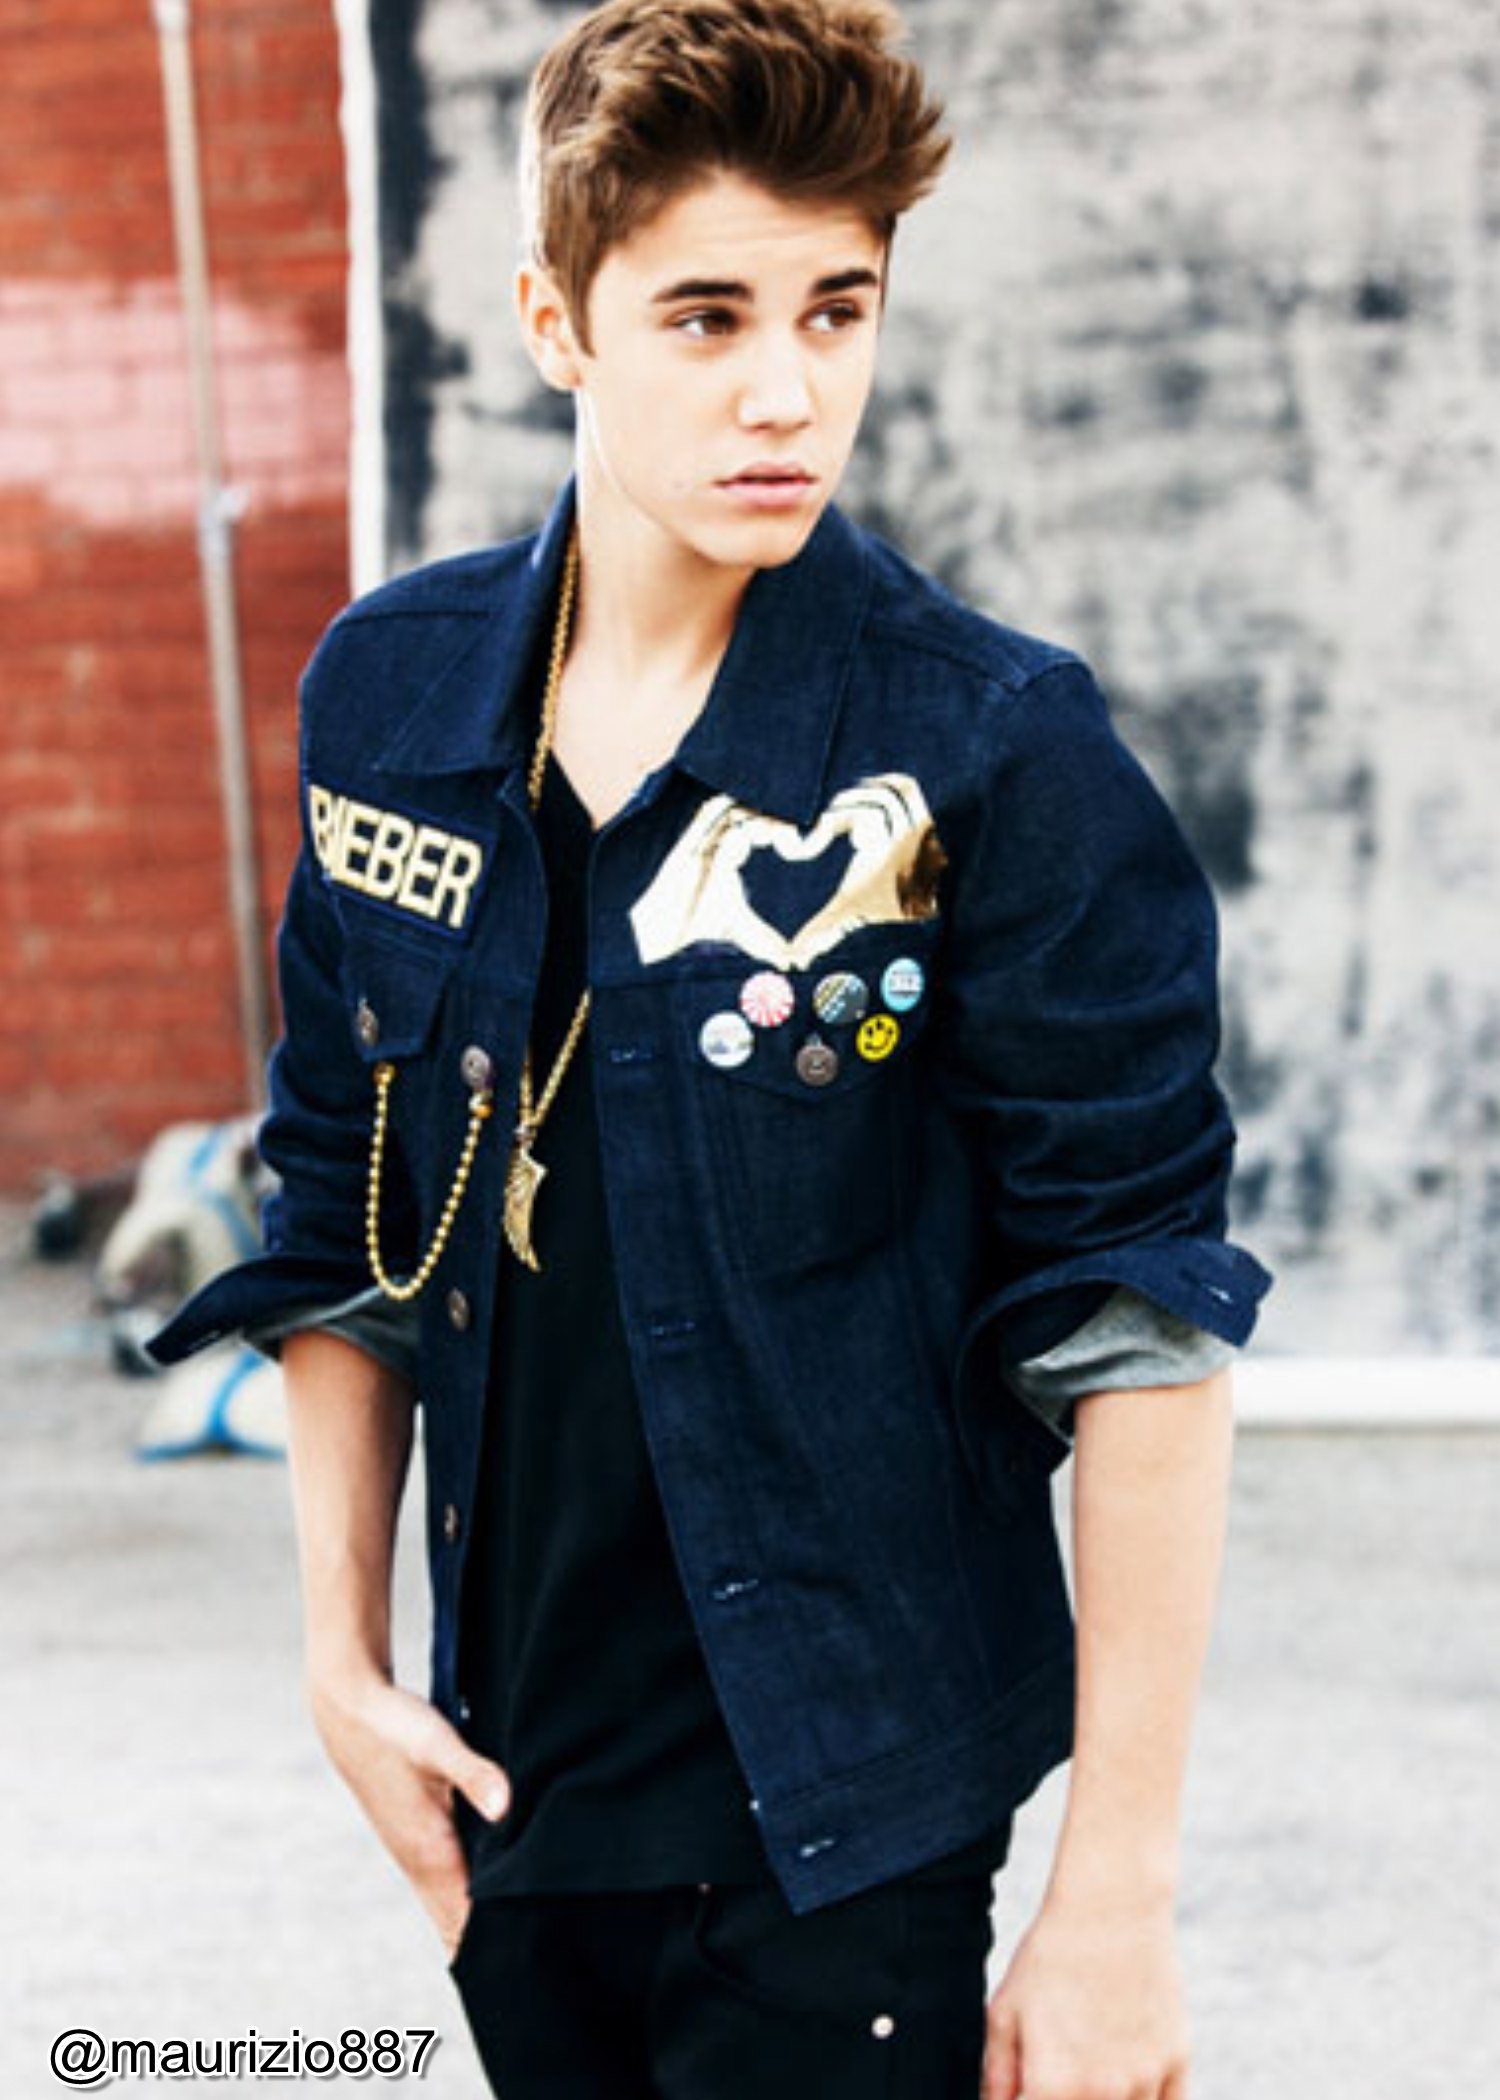 Justin Bieber Photo: justin bieber, believe, photohoot,. Justin bieber posters, Justin bieber photo, Justin bieber image